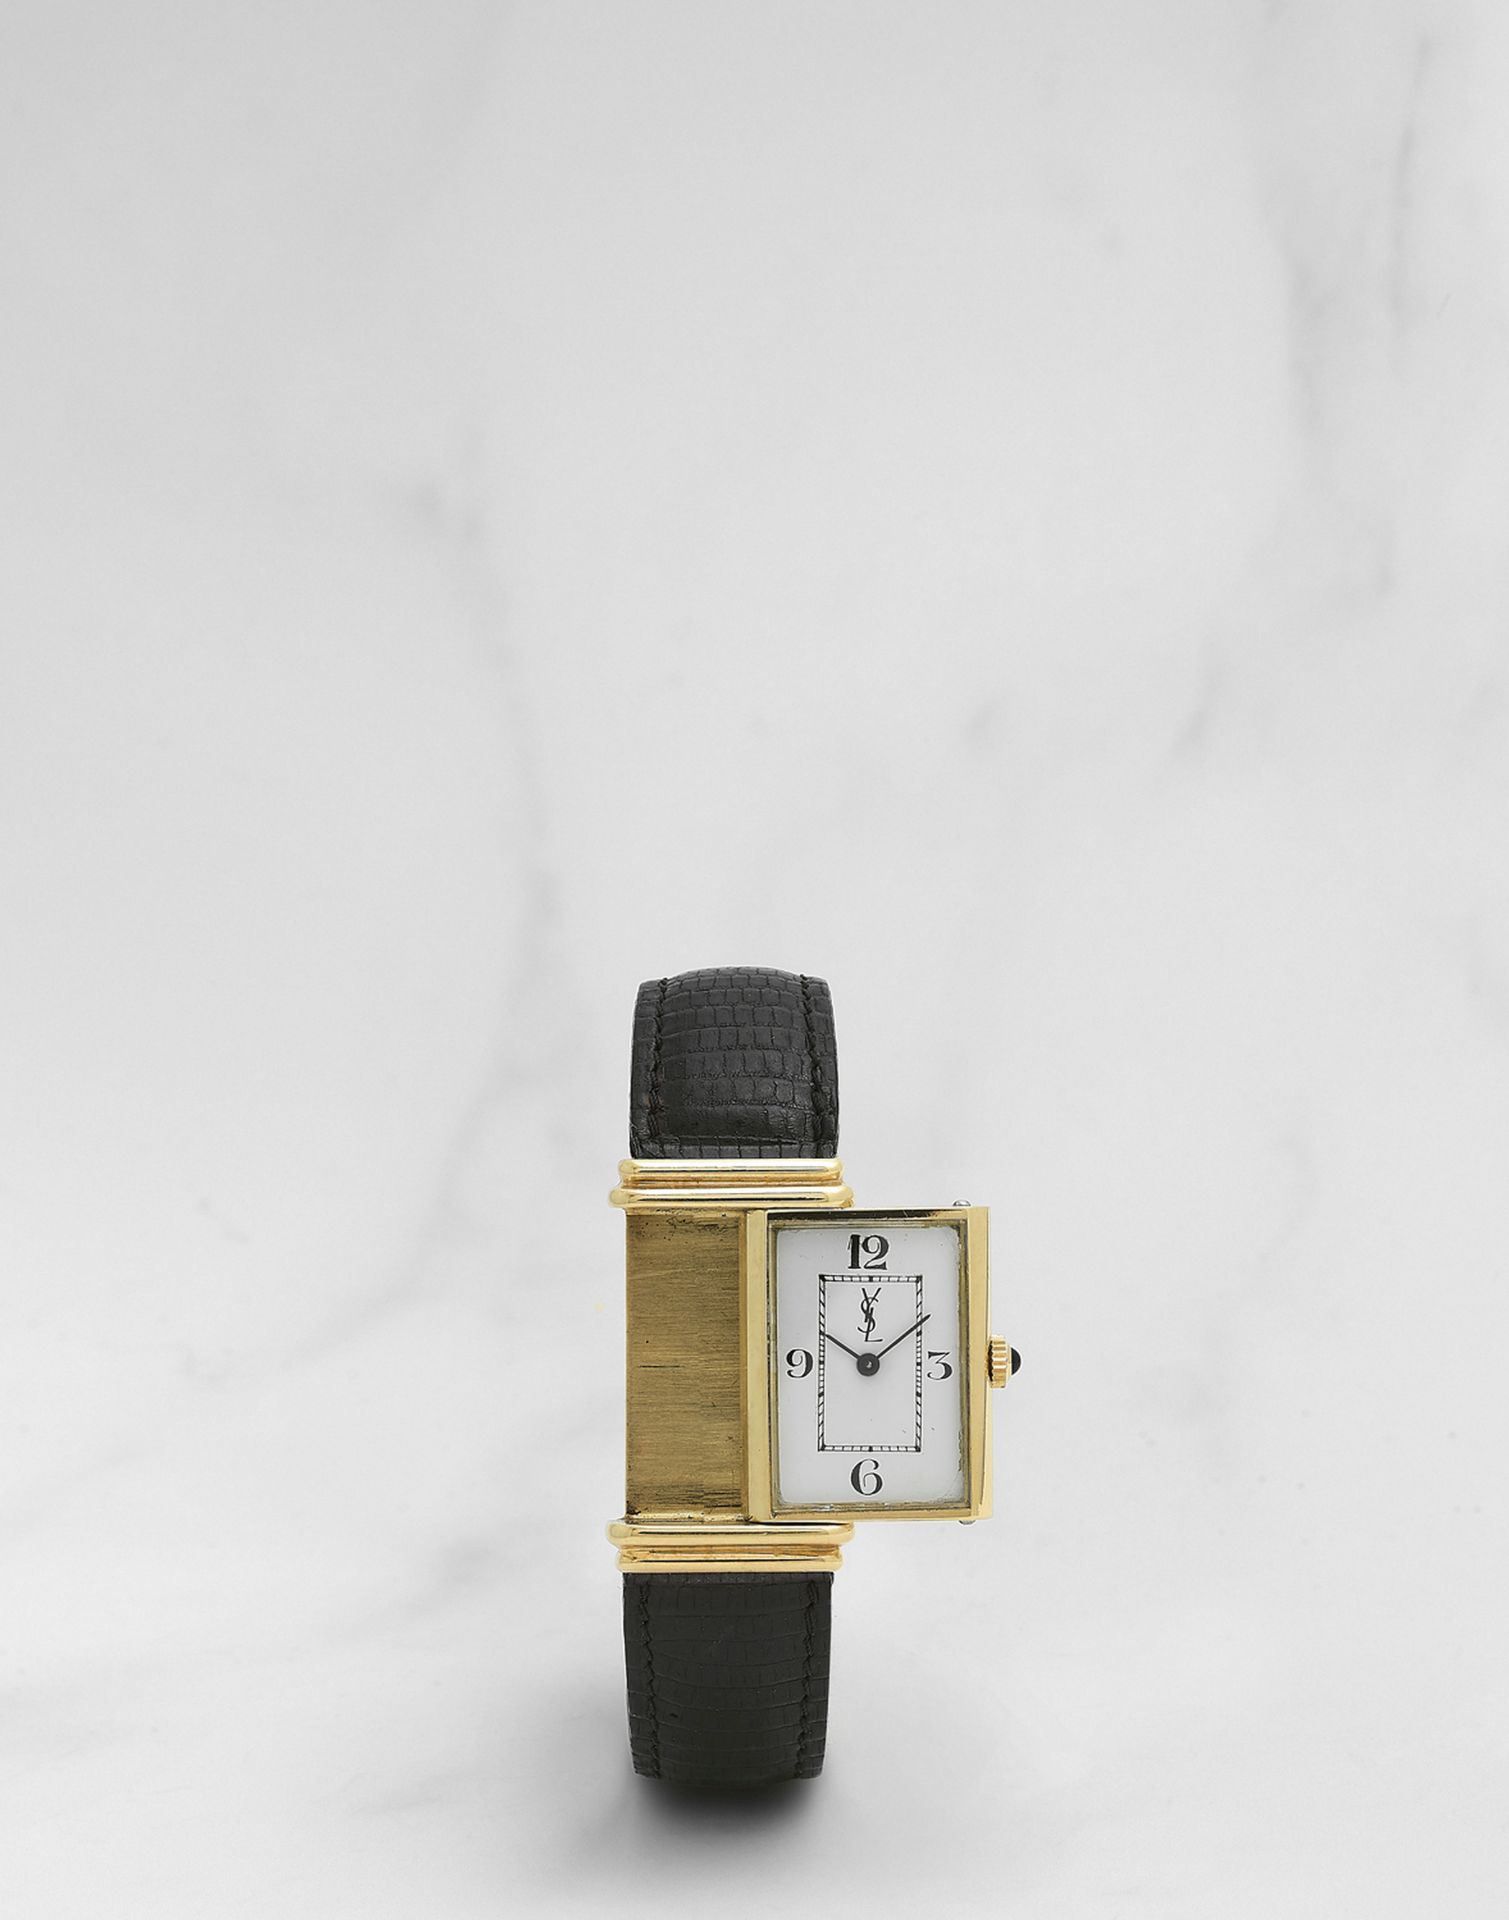 Yves Saint Laurent. Montre bracelet en or jaune 18K (750) rectangulaire r&#233;versible mouvemen... - Image 2 of 2